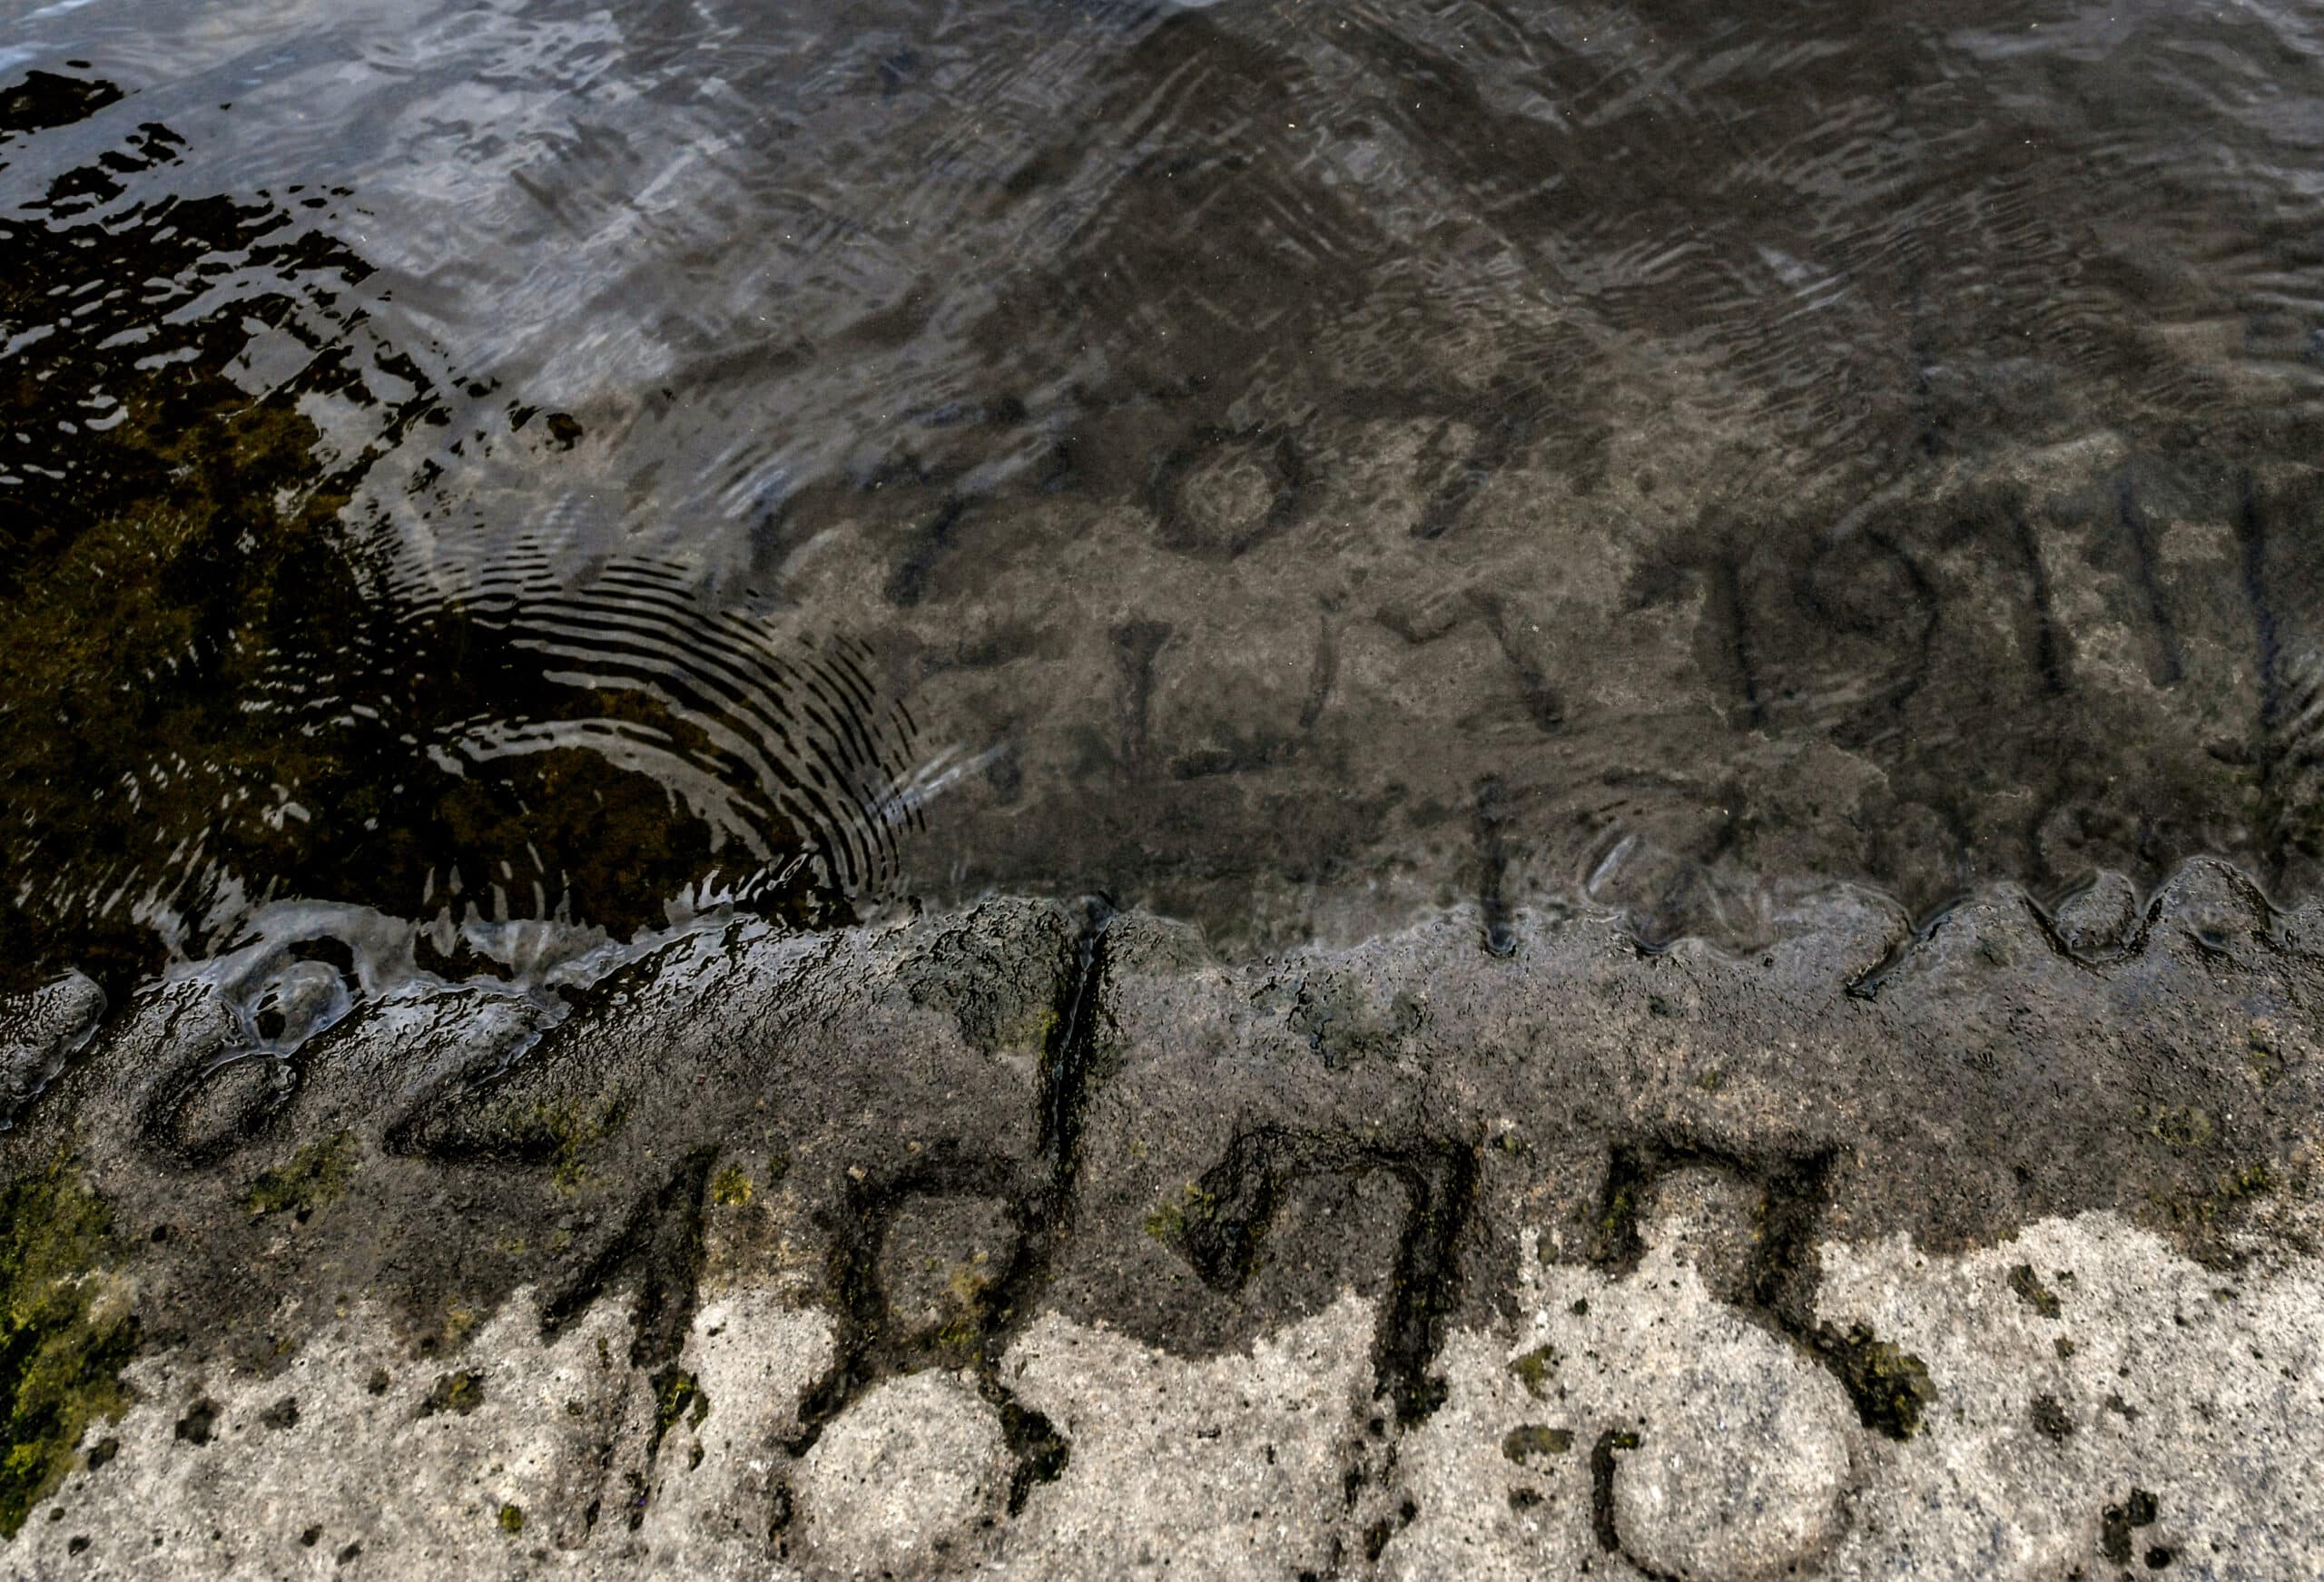 Suša širom Evrope otkriva drevno kamenje i poruke: "Ako ovo vidiš, plači" 2